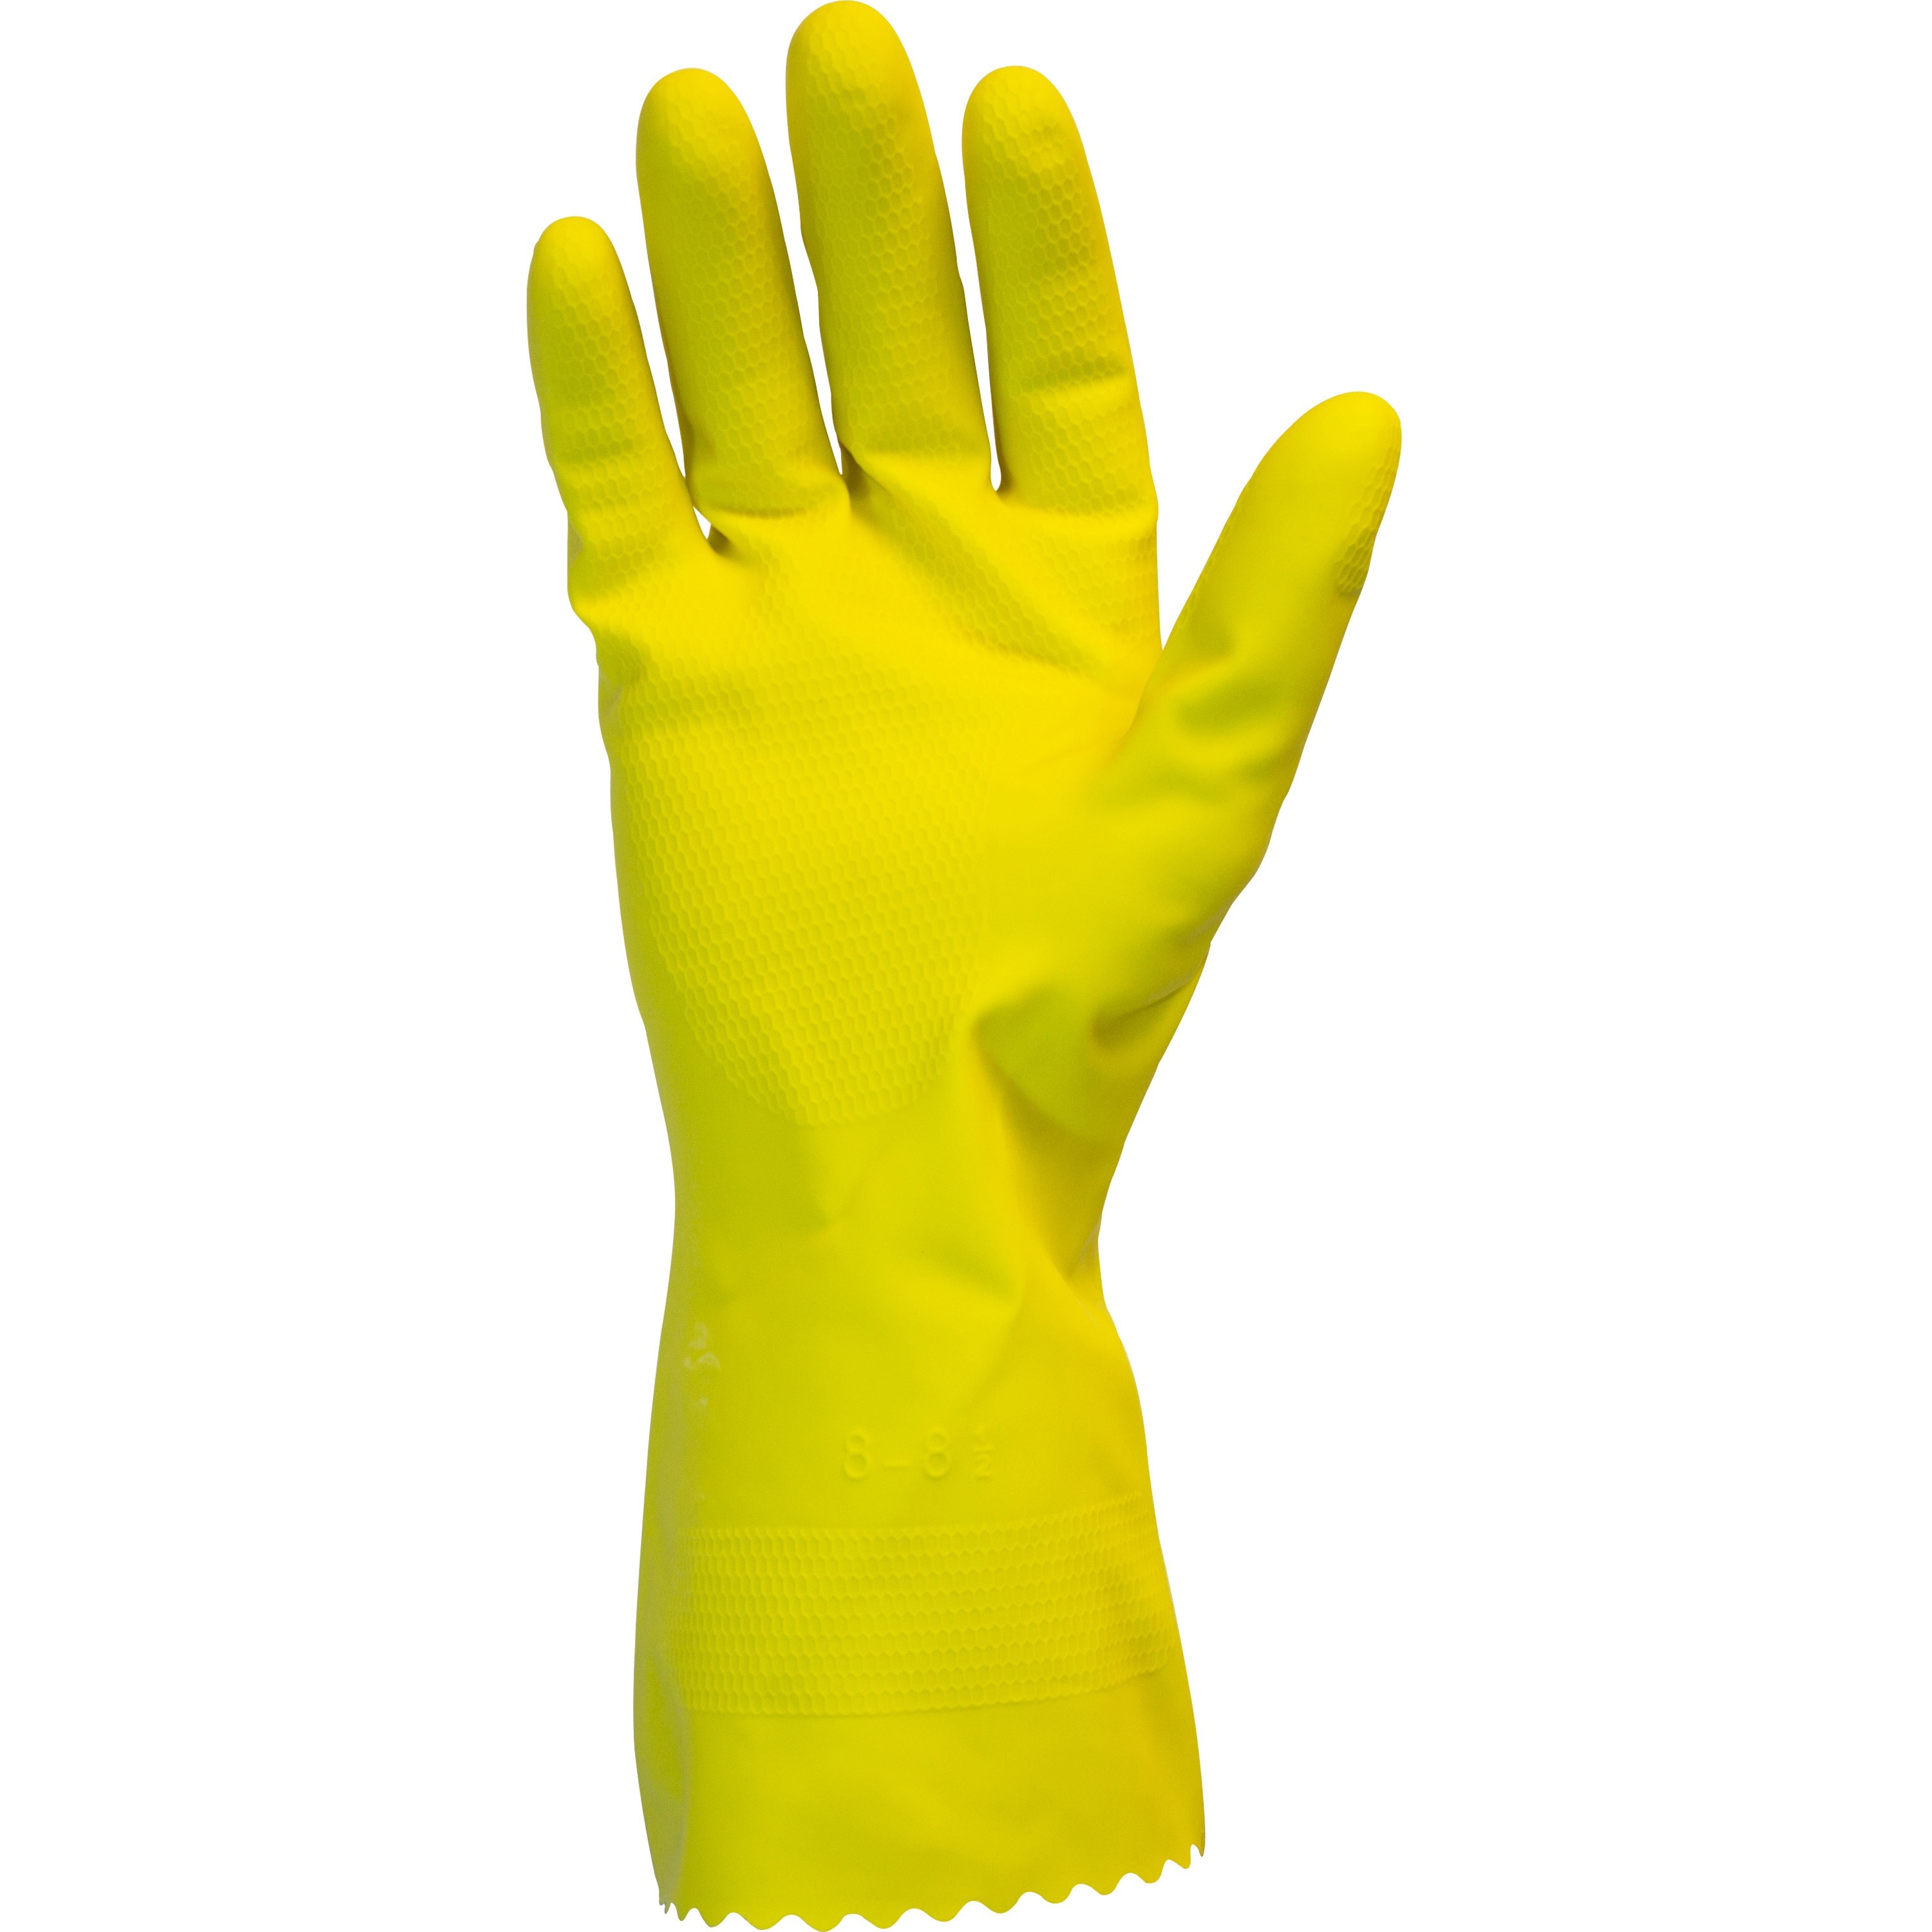 Safety Zone gelbe Herde gefütterte Latexhandschuhe (grfysm1s) - Bild 1 von 1